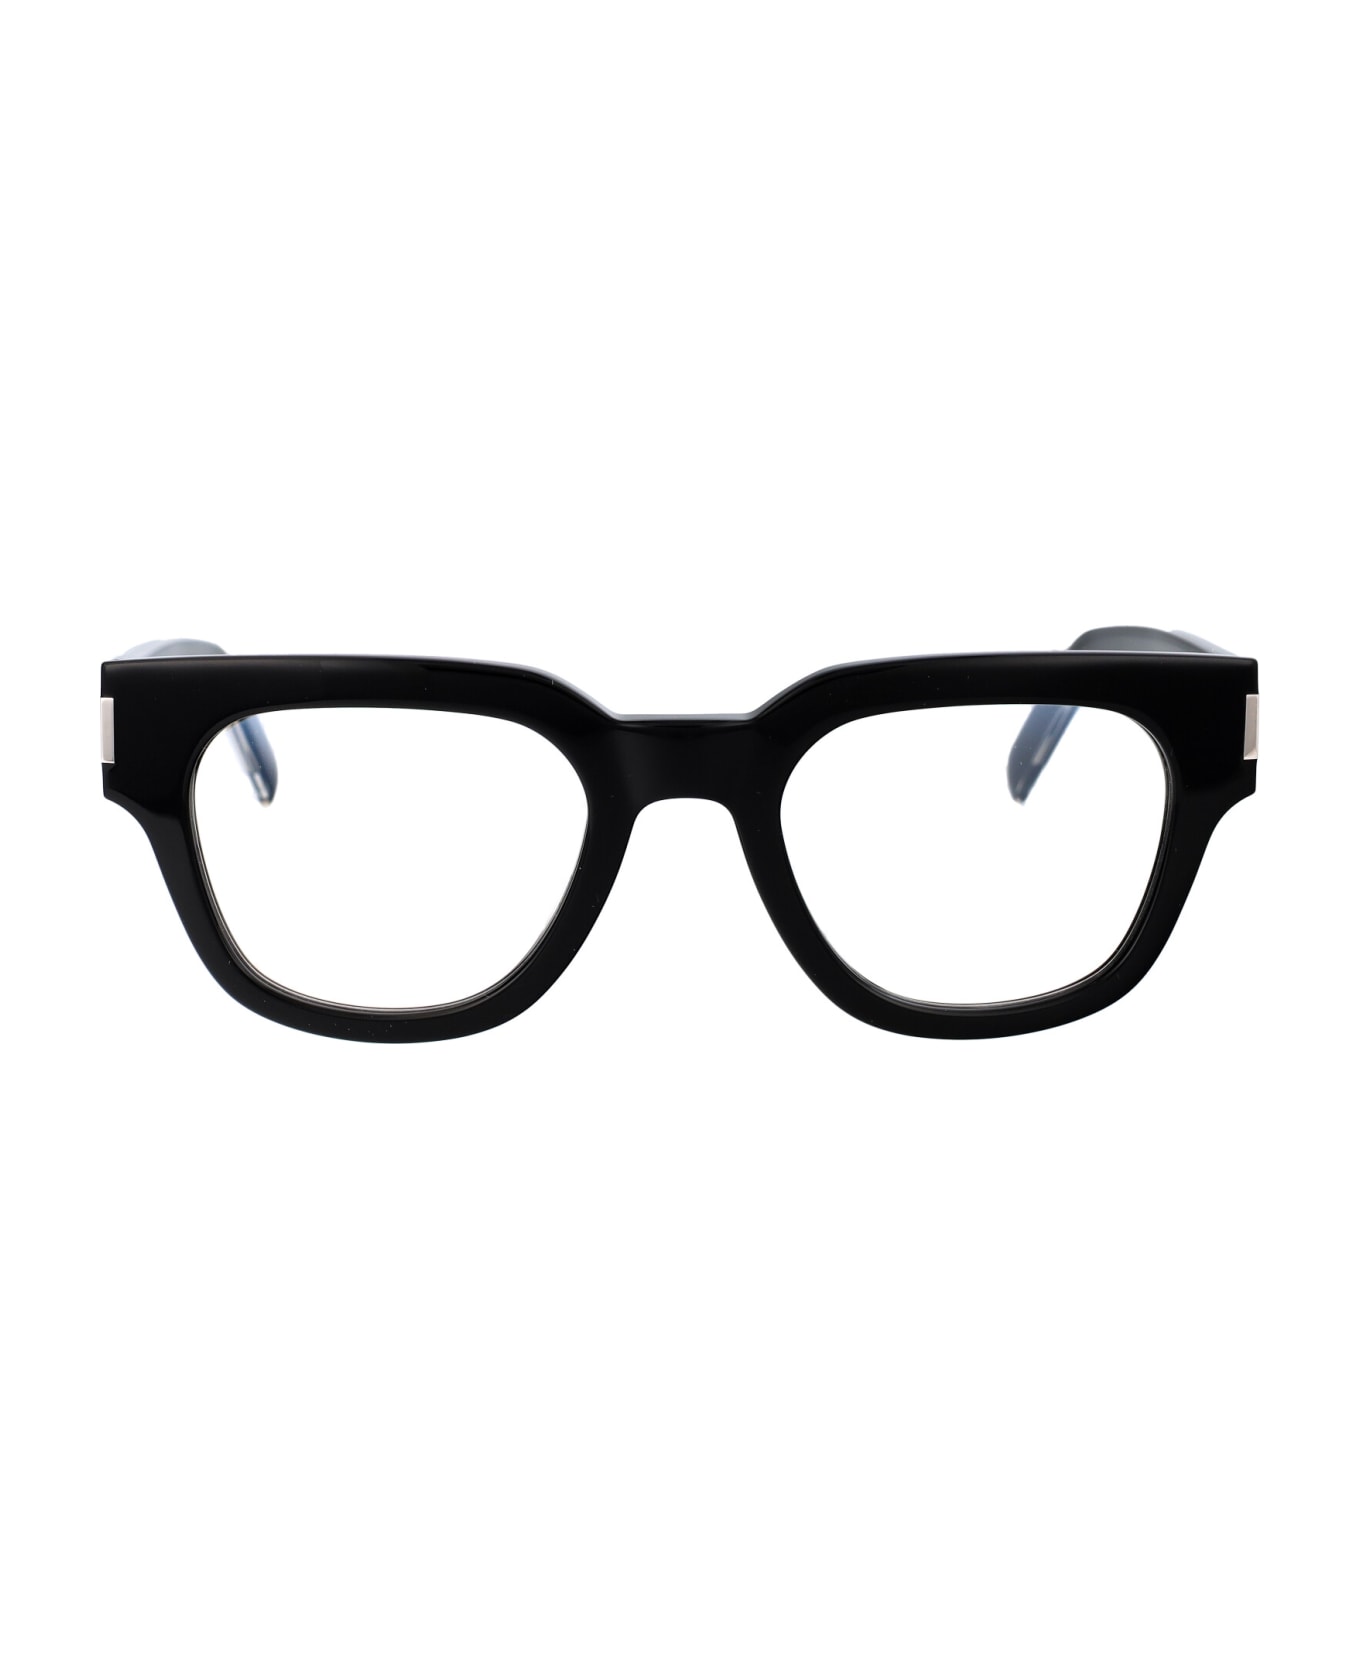 Saint Laurent Eyewear Sl 661 Glasses - 001 BLACK CRYSTAL TRANSPARENT アイウェア